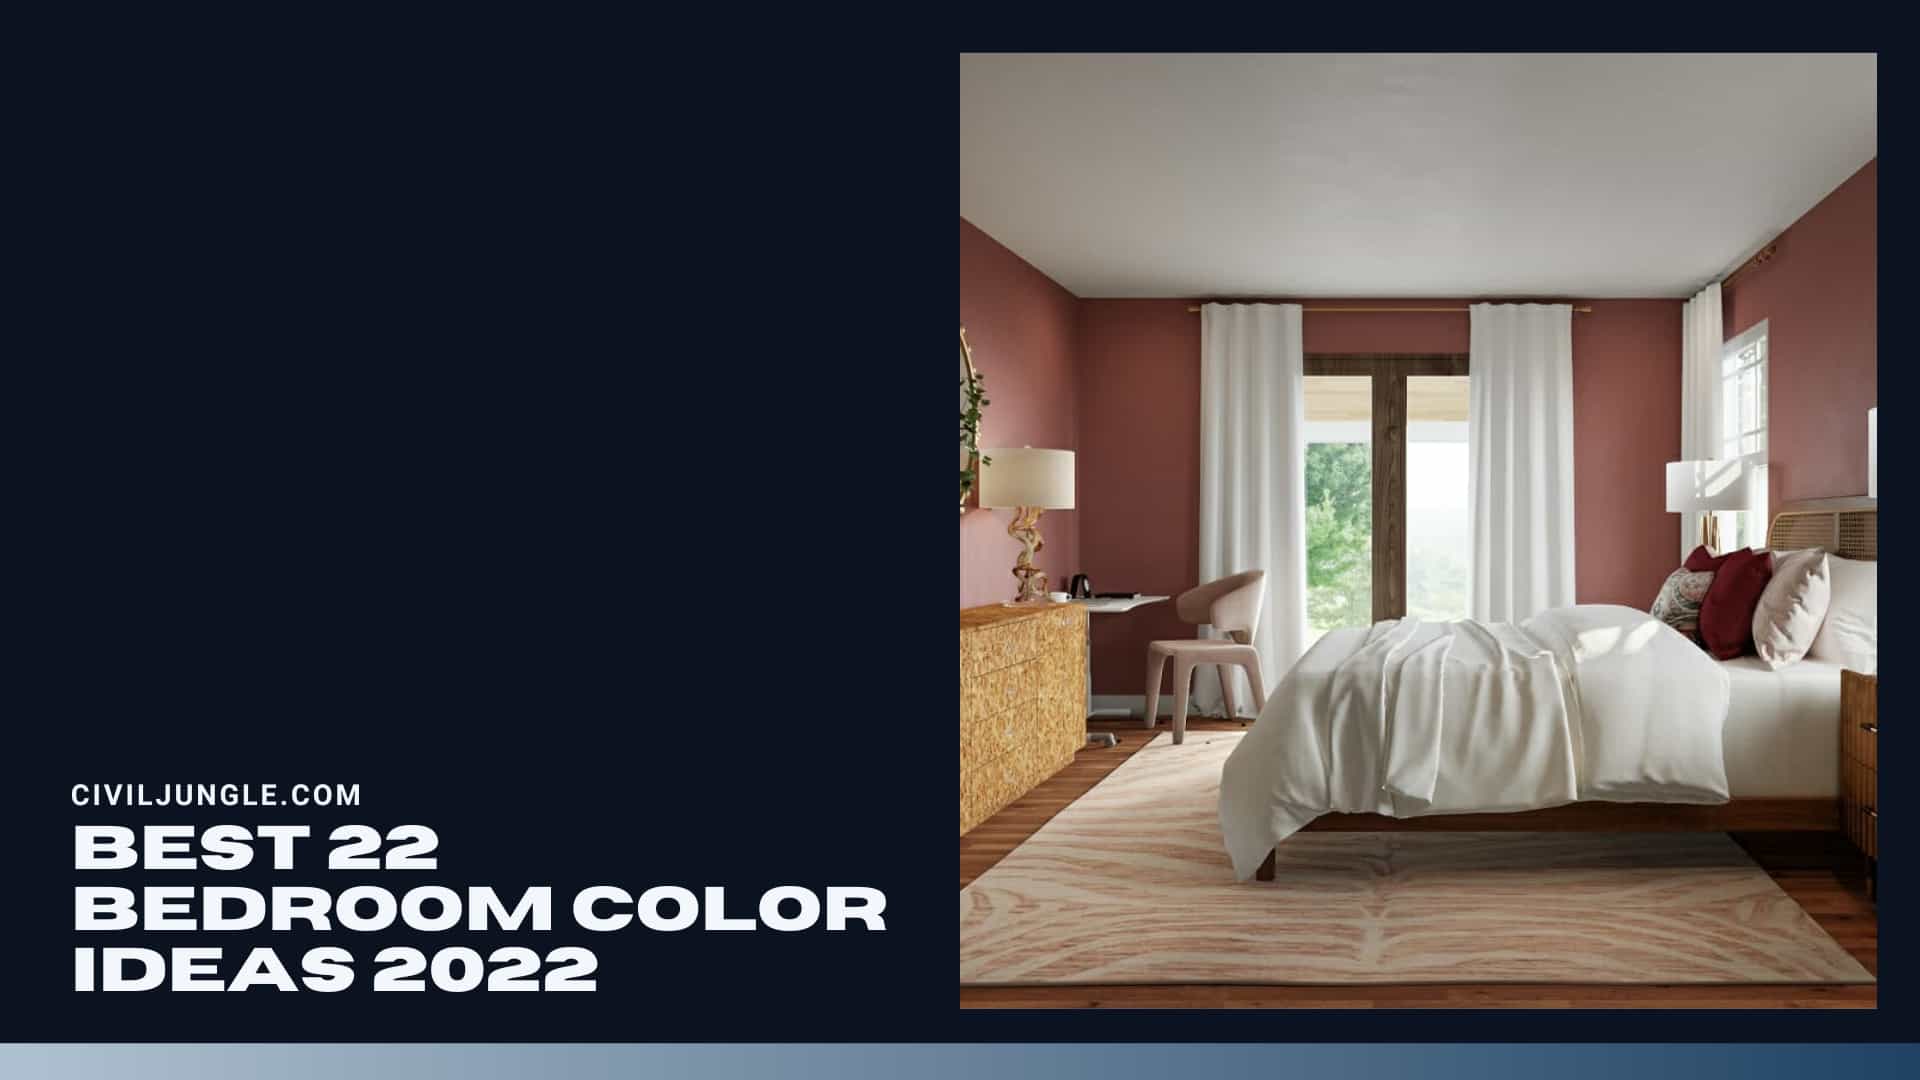 Cele mai bune idei de culori pentru 22 de dormitoare 2022